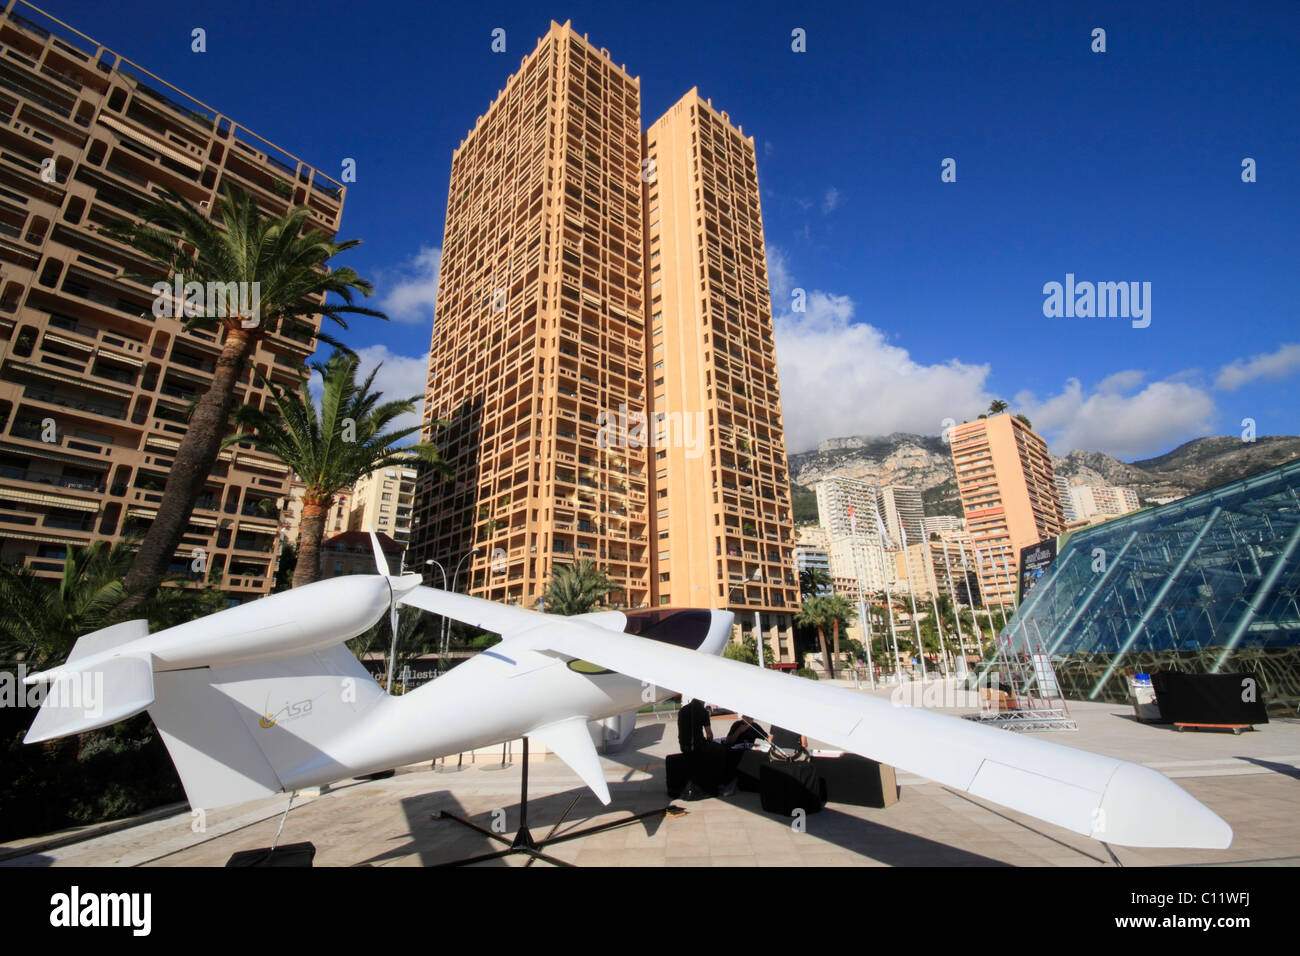 Les petits avions de la marque Visa avions en avant du Grimaldi Forum, des gratte-ciel Colombie-Britannique Palace et Houston Palace Banque D'Images